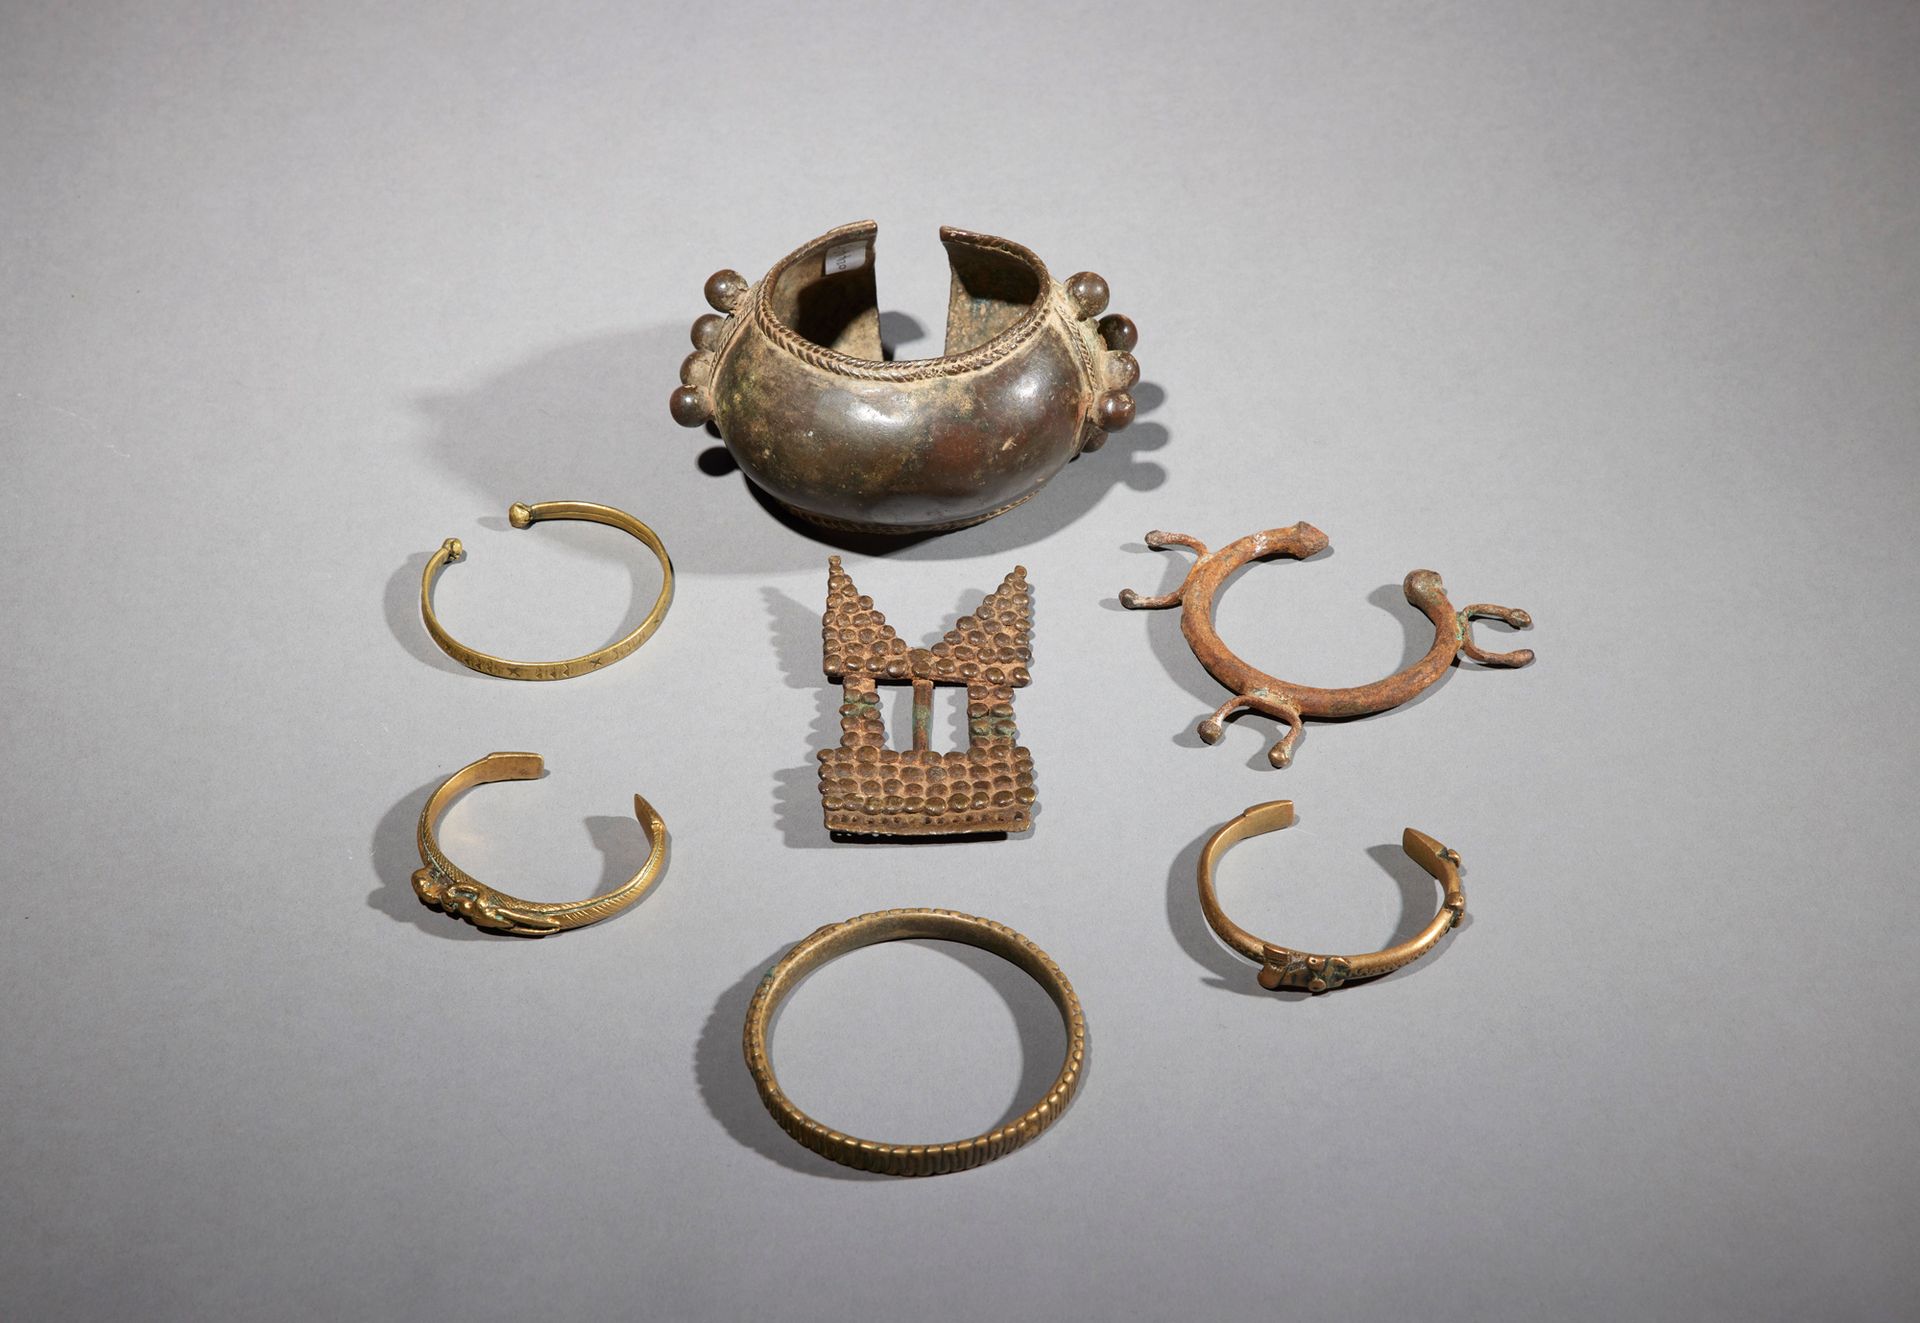 Null 七件文物

西非

铜质

长6.5至12.5厘米



一套七件青铜器，包括六个手镯和一个青铜皮带扣。